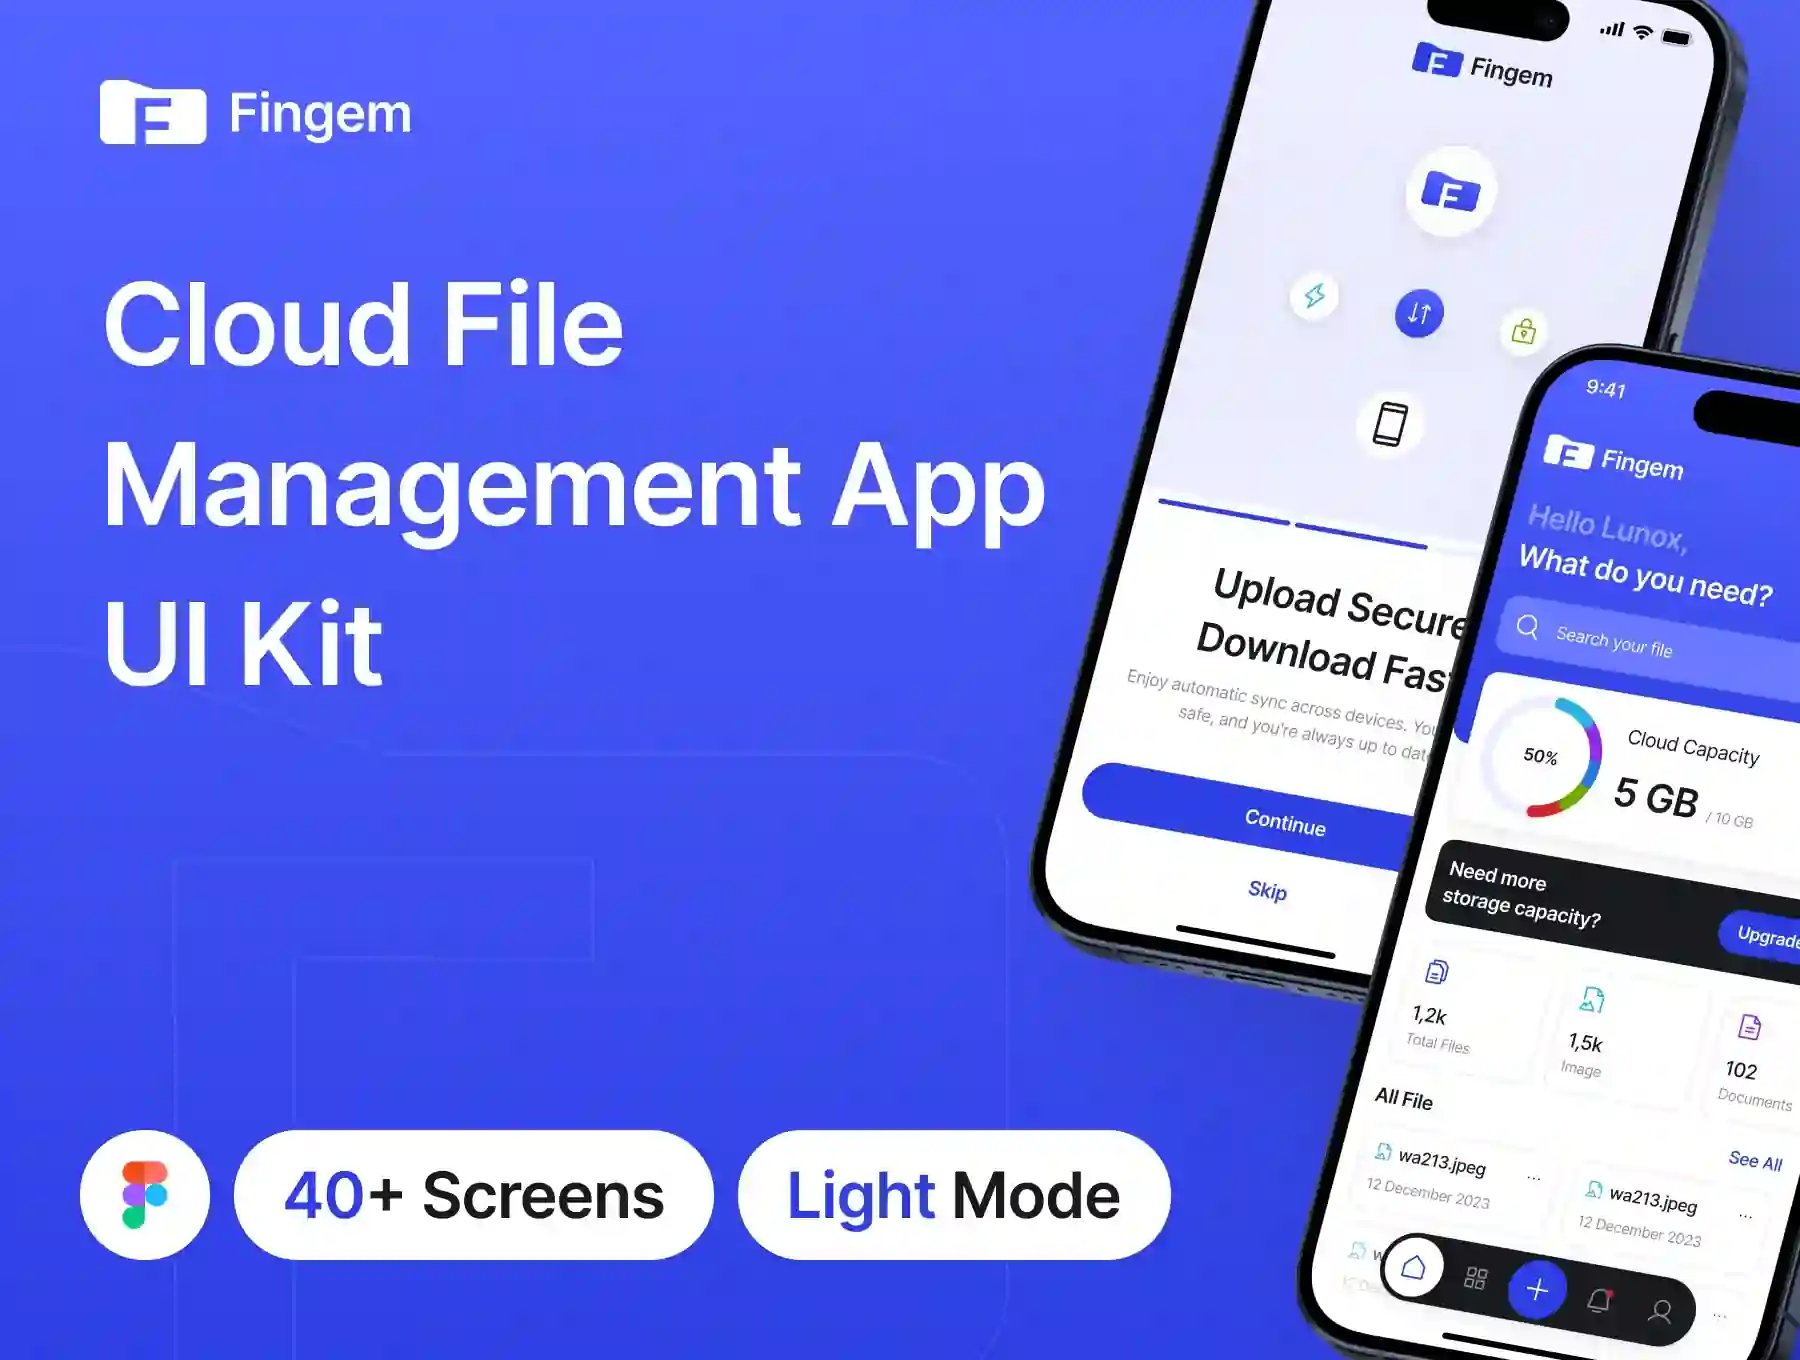 Fingem - Cloud File Management App UI Kit